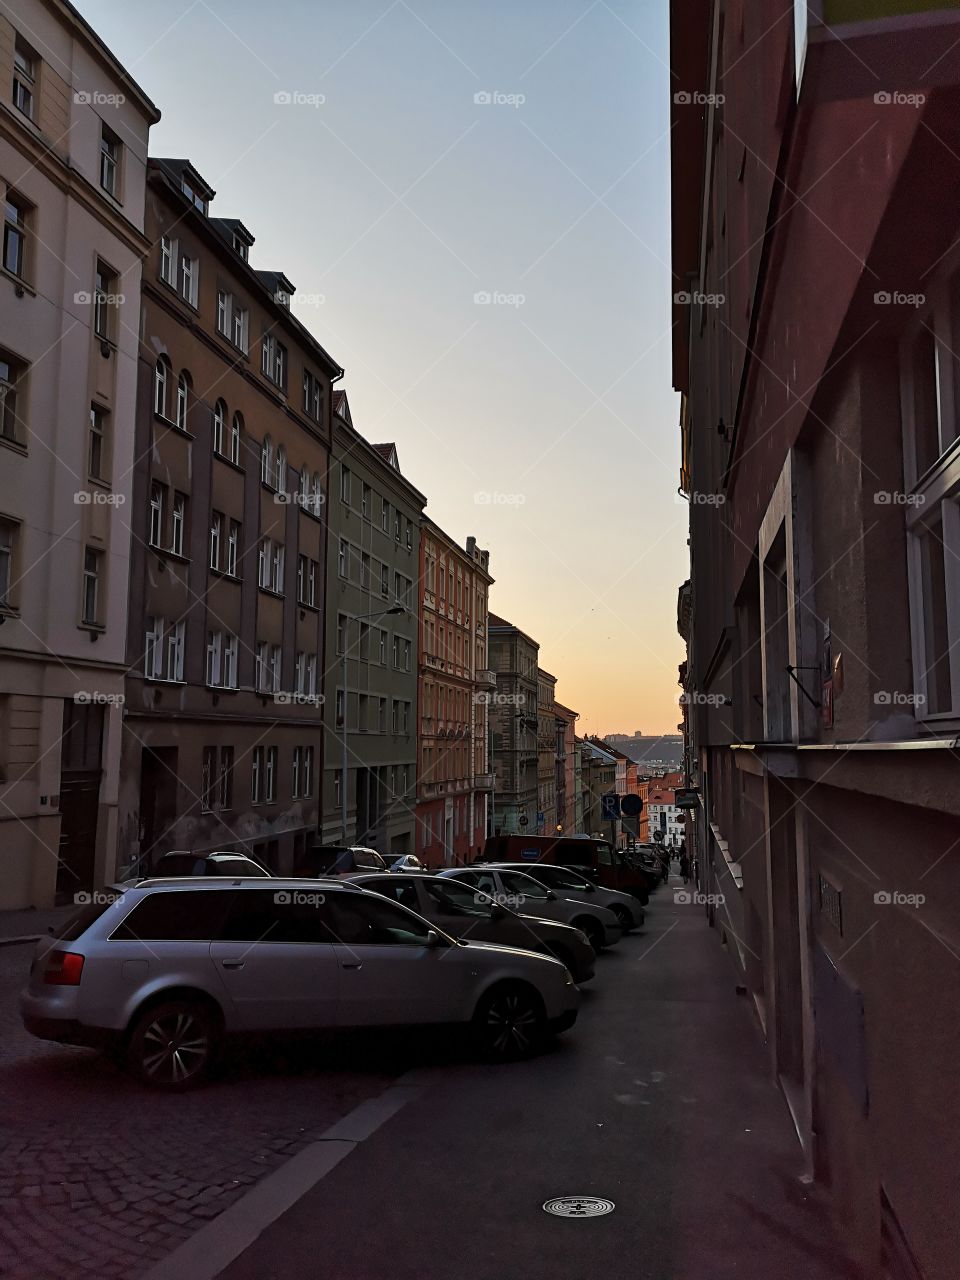 European evening street